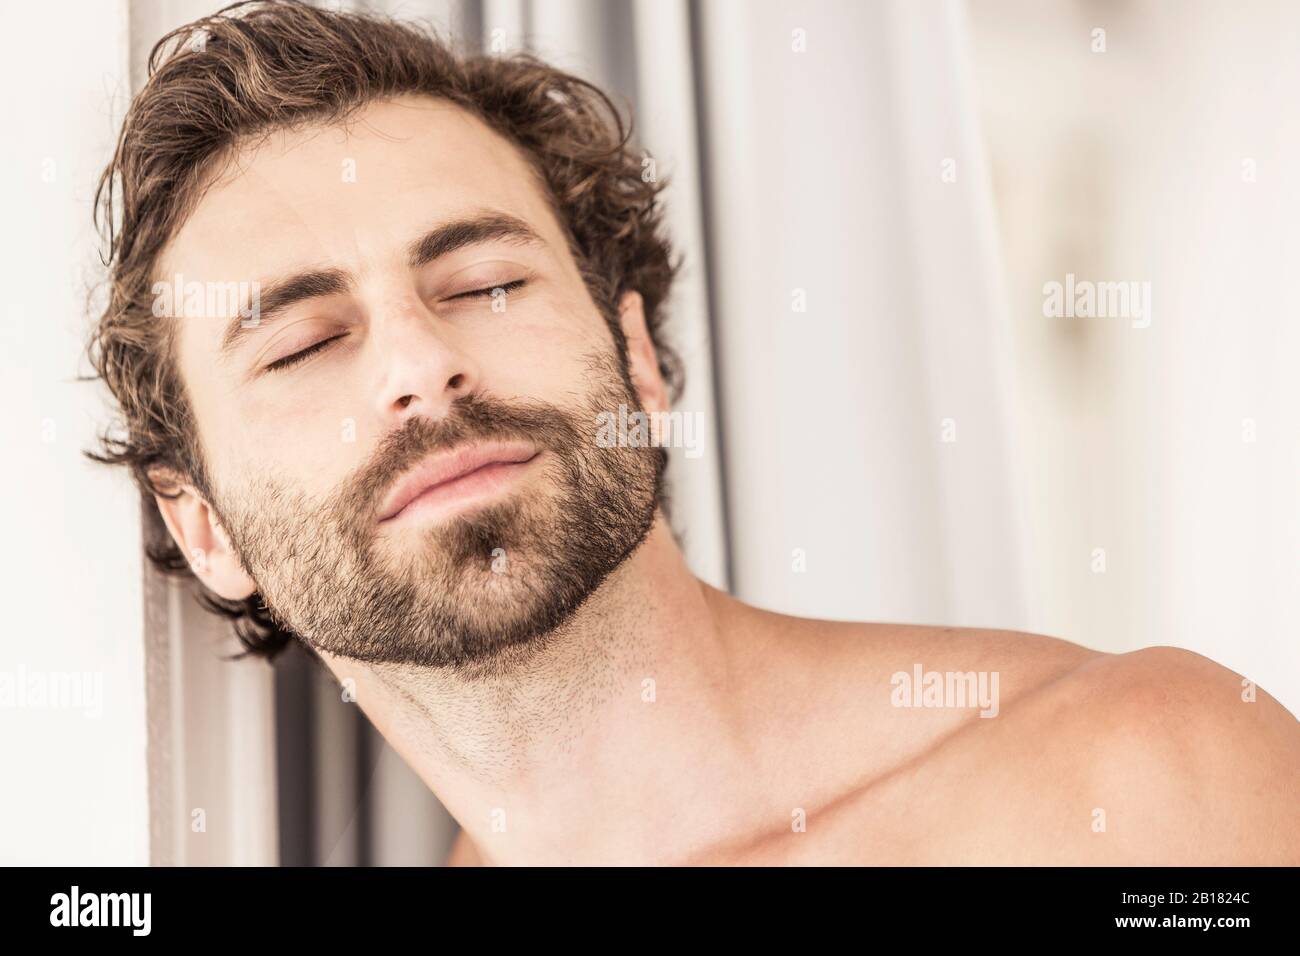 Portrait de jeune homme avec barbe, yeux fermés Banque D'Images